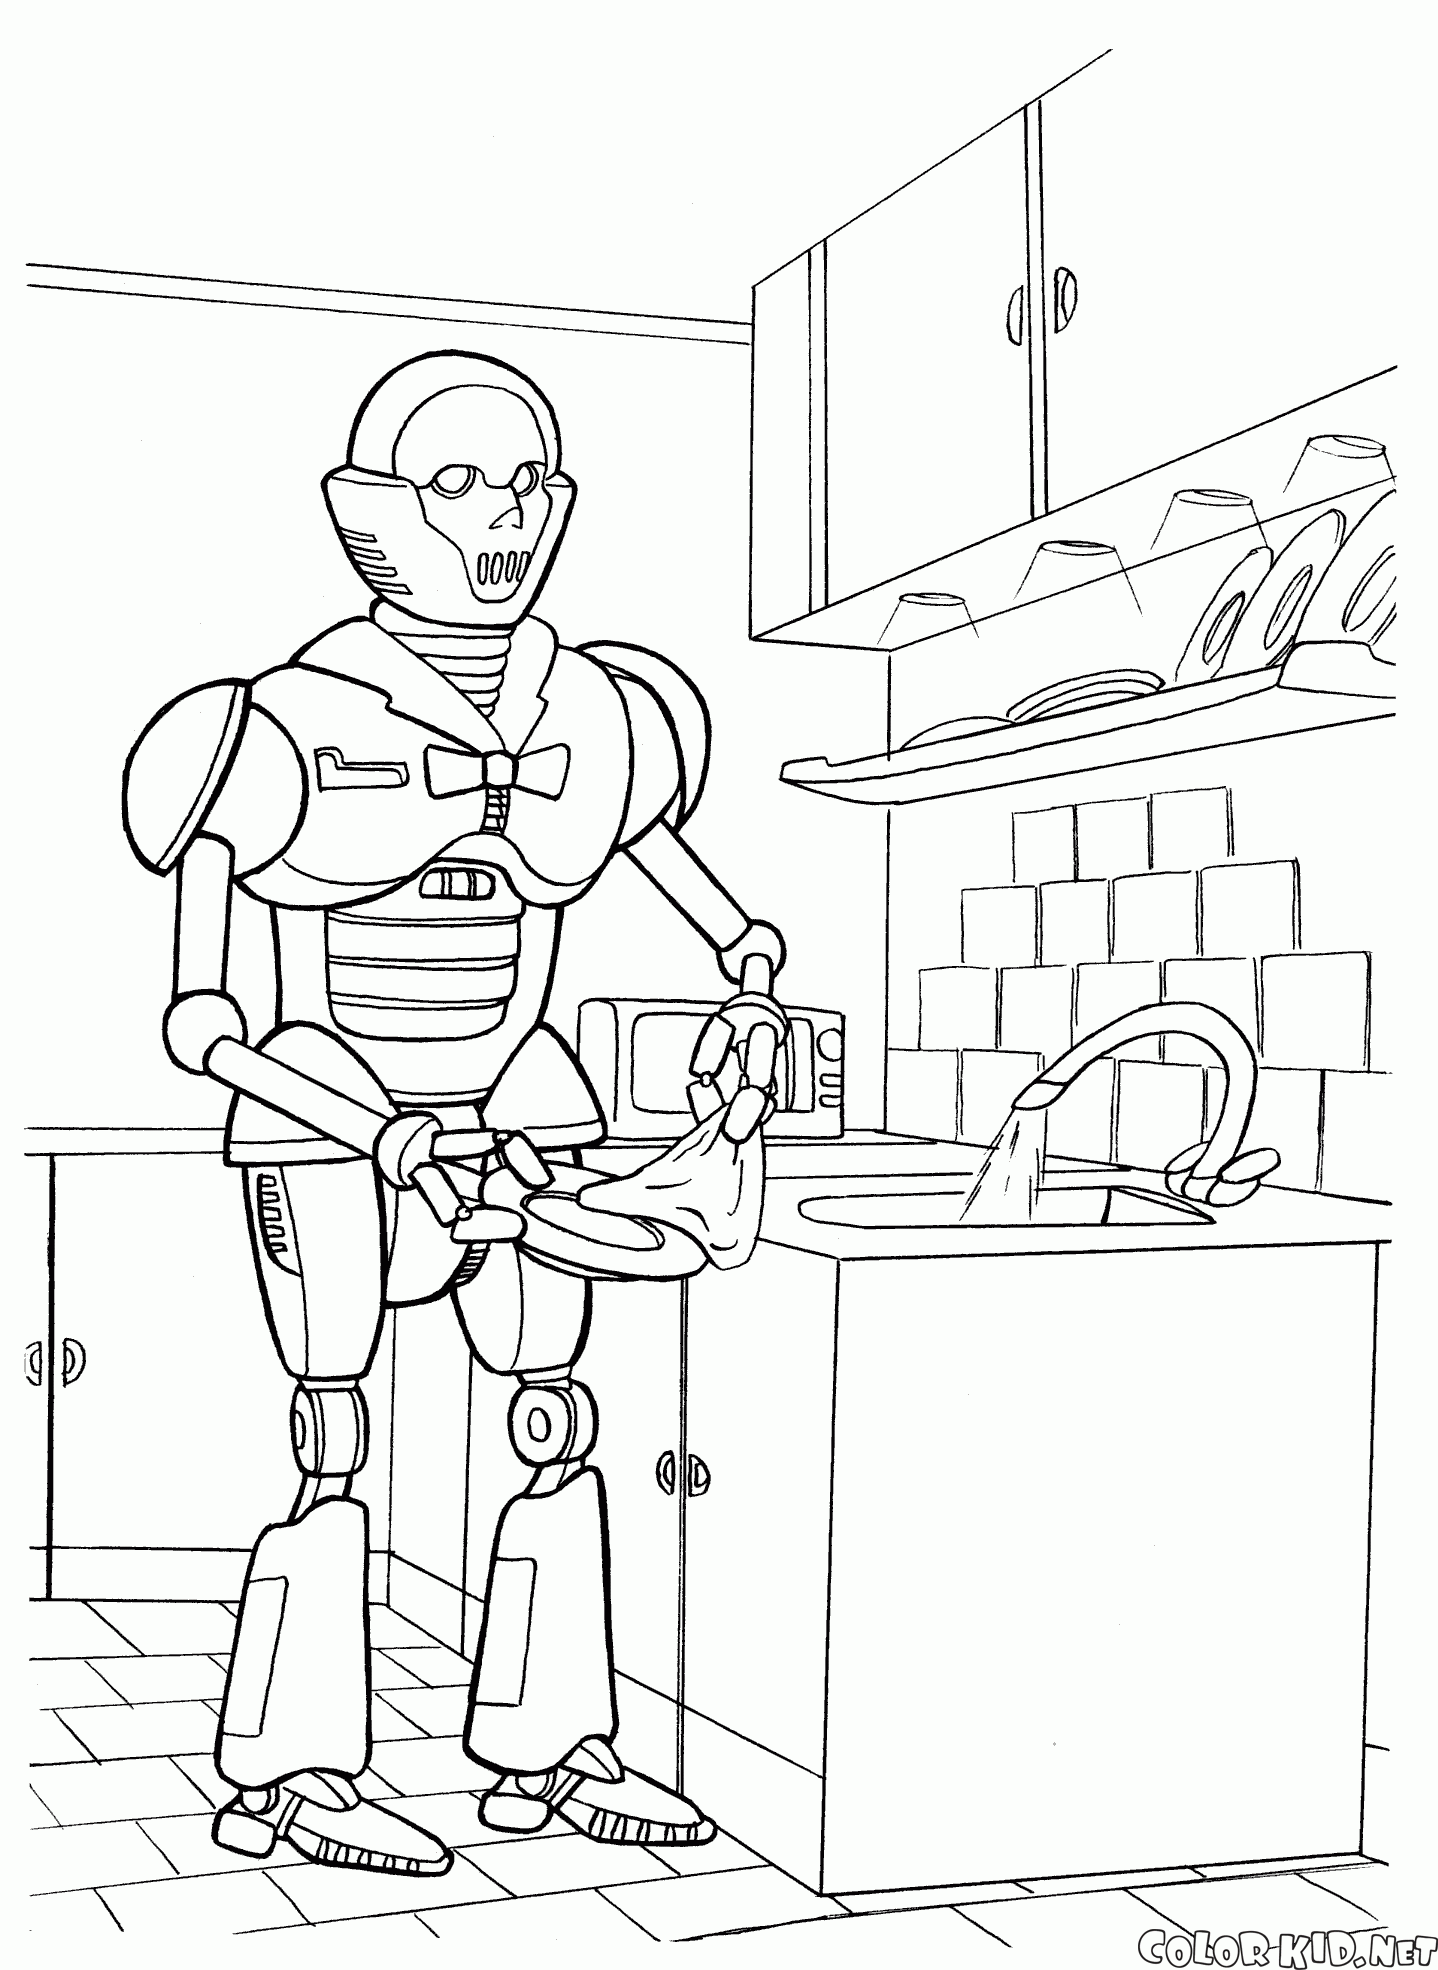 Robot dishwasher